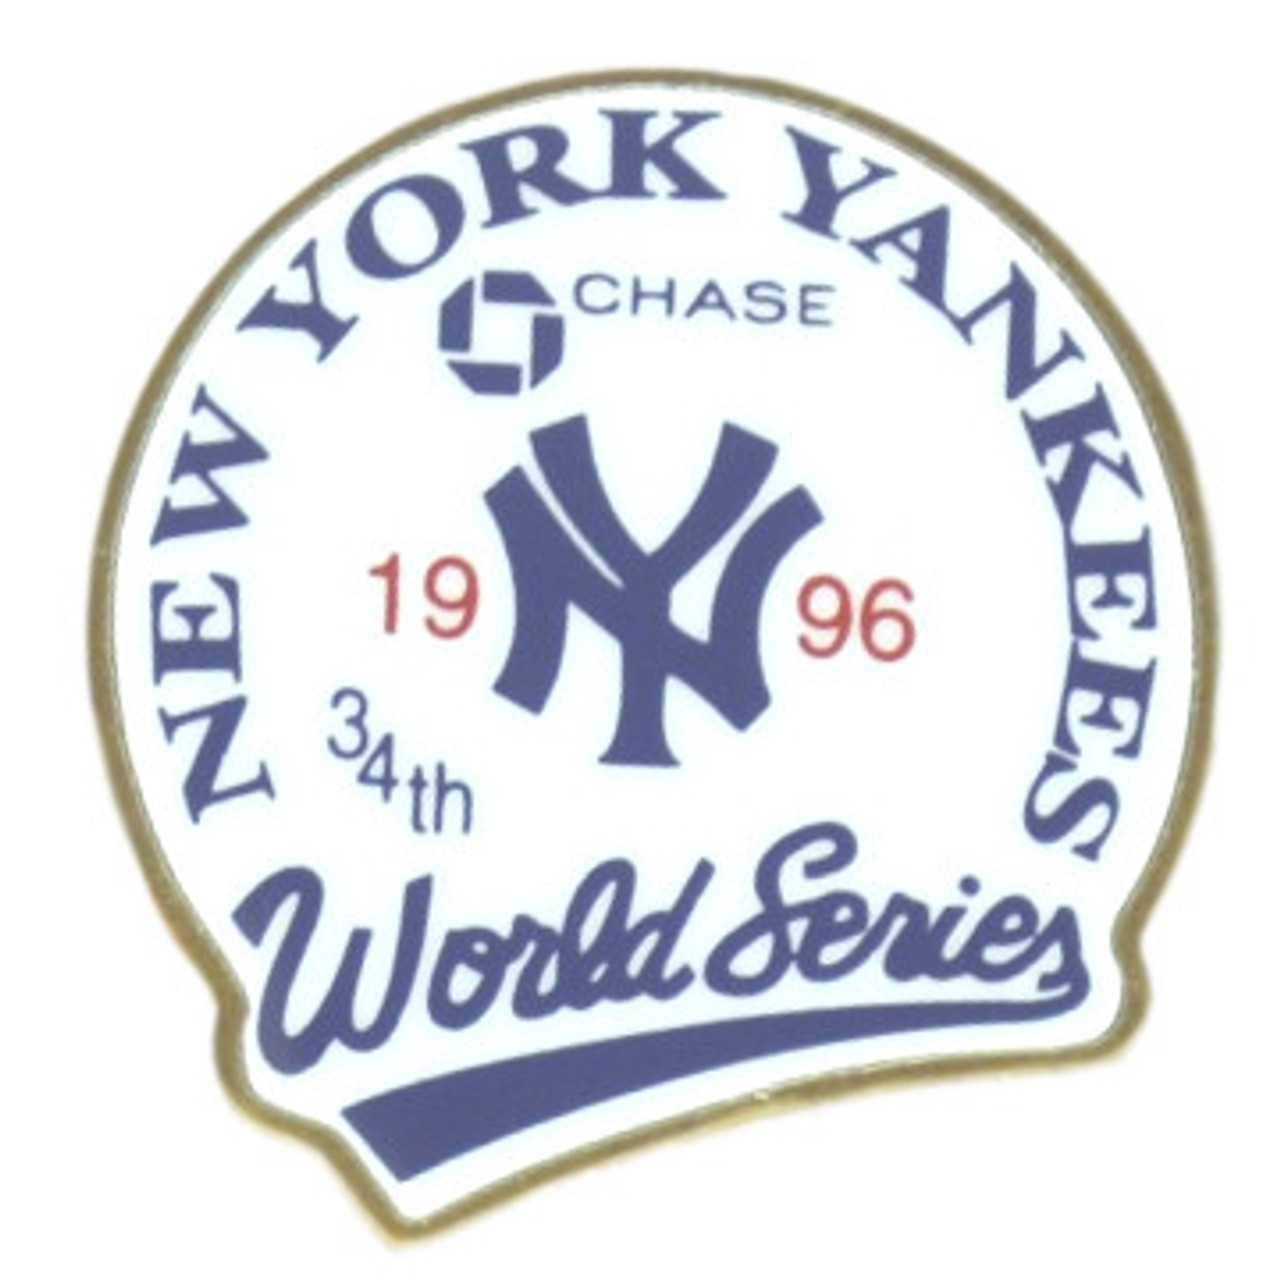 New York Yankees 1996 World Series Champions Logo Stadium Chase Pin